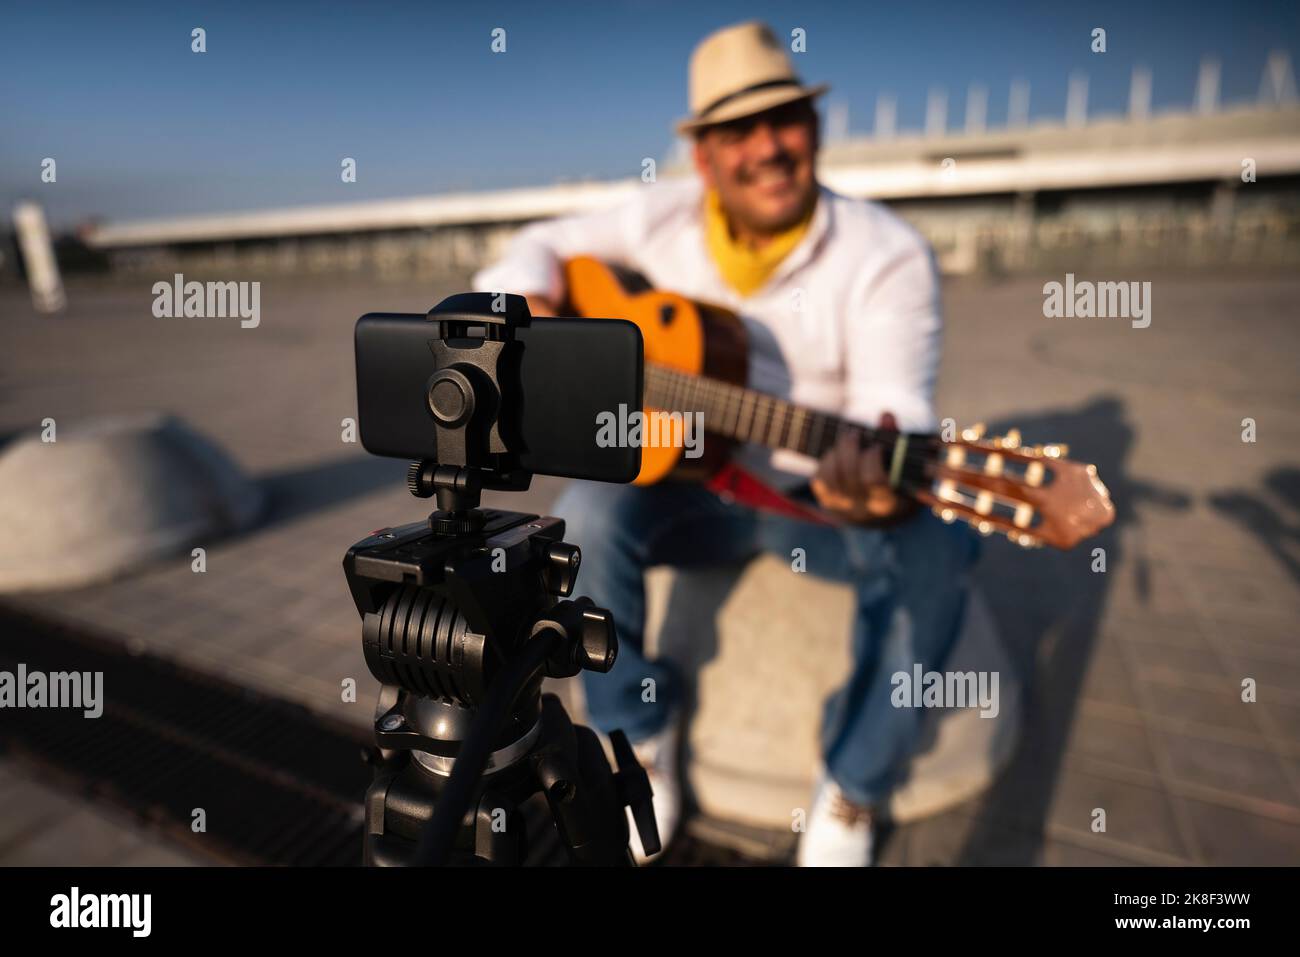 Straßenmusiker, der Gitarre spielt und über ein Mobiltelefon auf einem Stativ aufnimmt Stockfoto